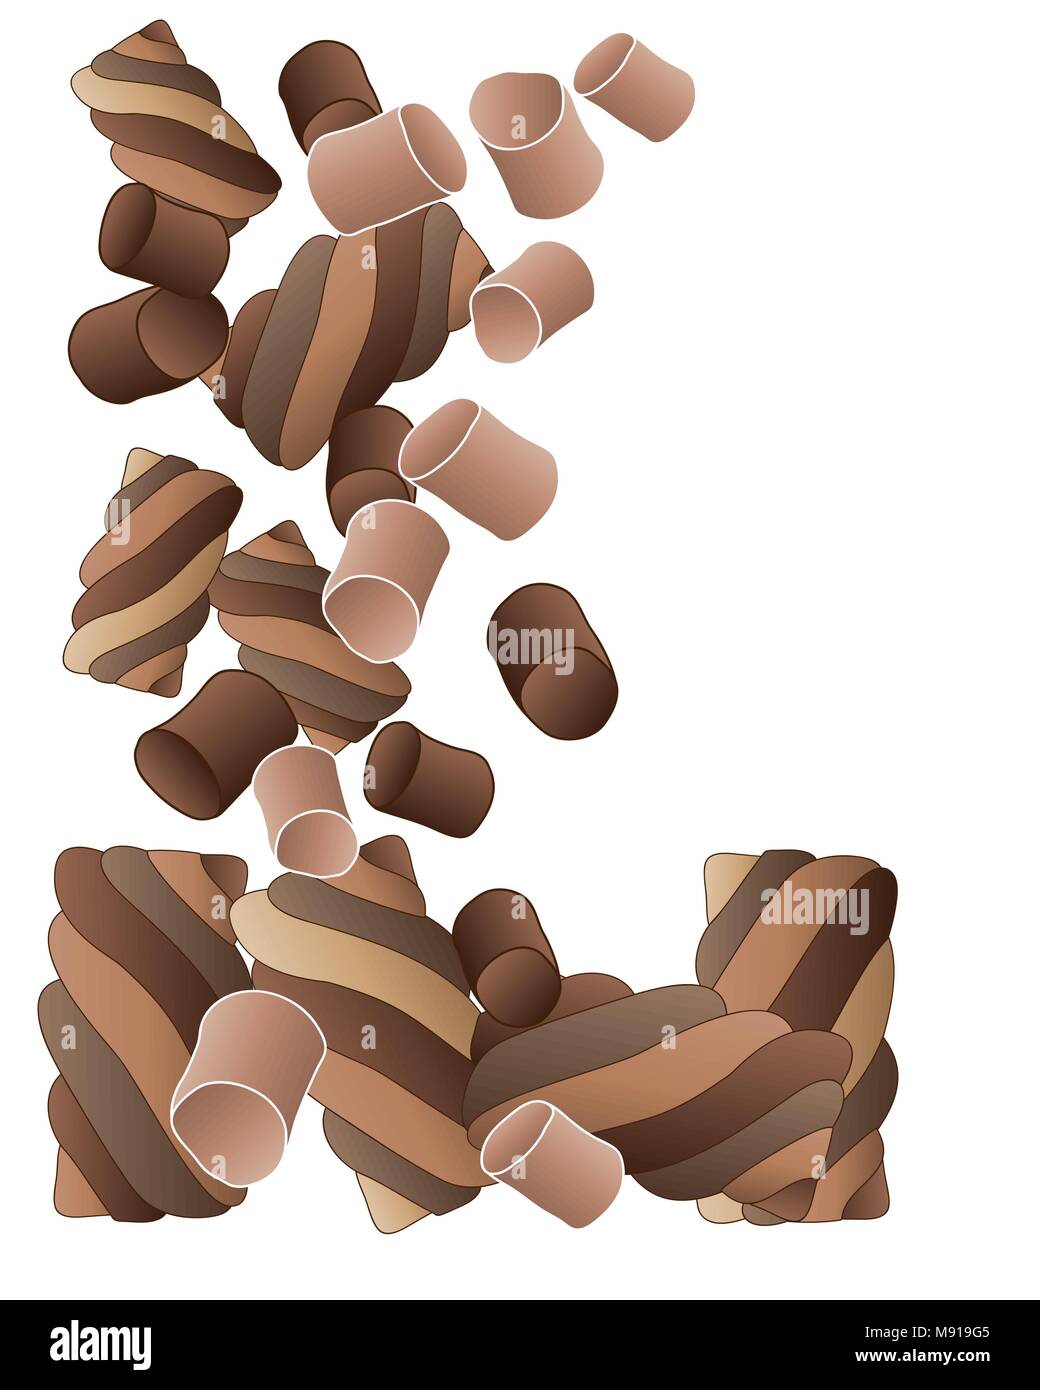 Un vecteur illustration en format eps 10 bonbons de chocolat lisse et vrille en tumbling sur fond blanc Illustration de Vecteur